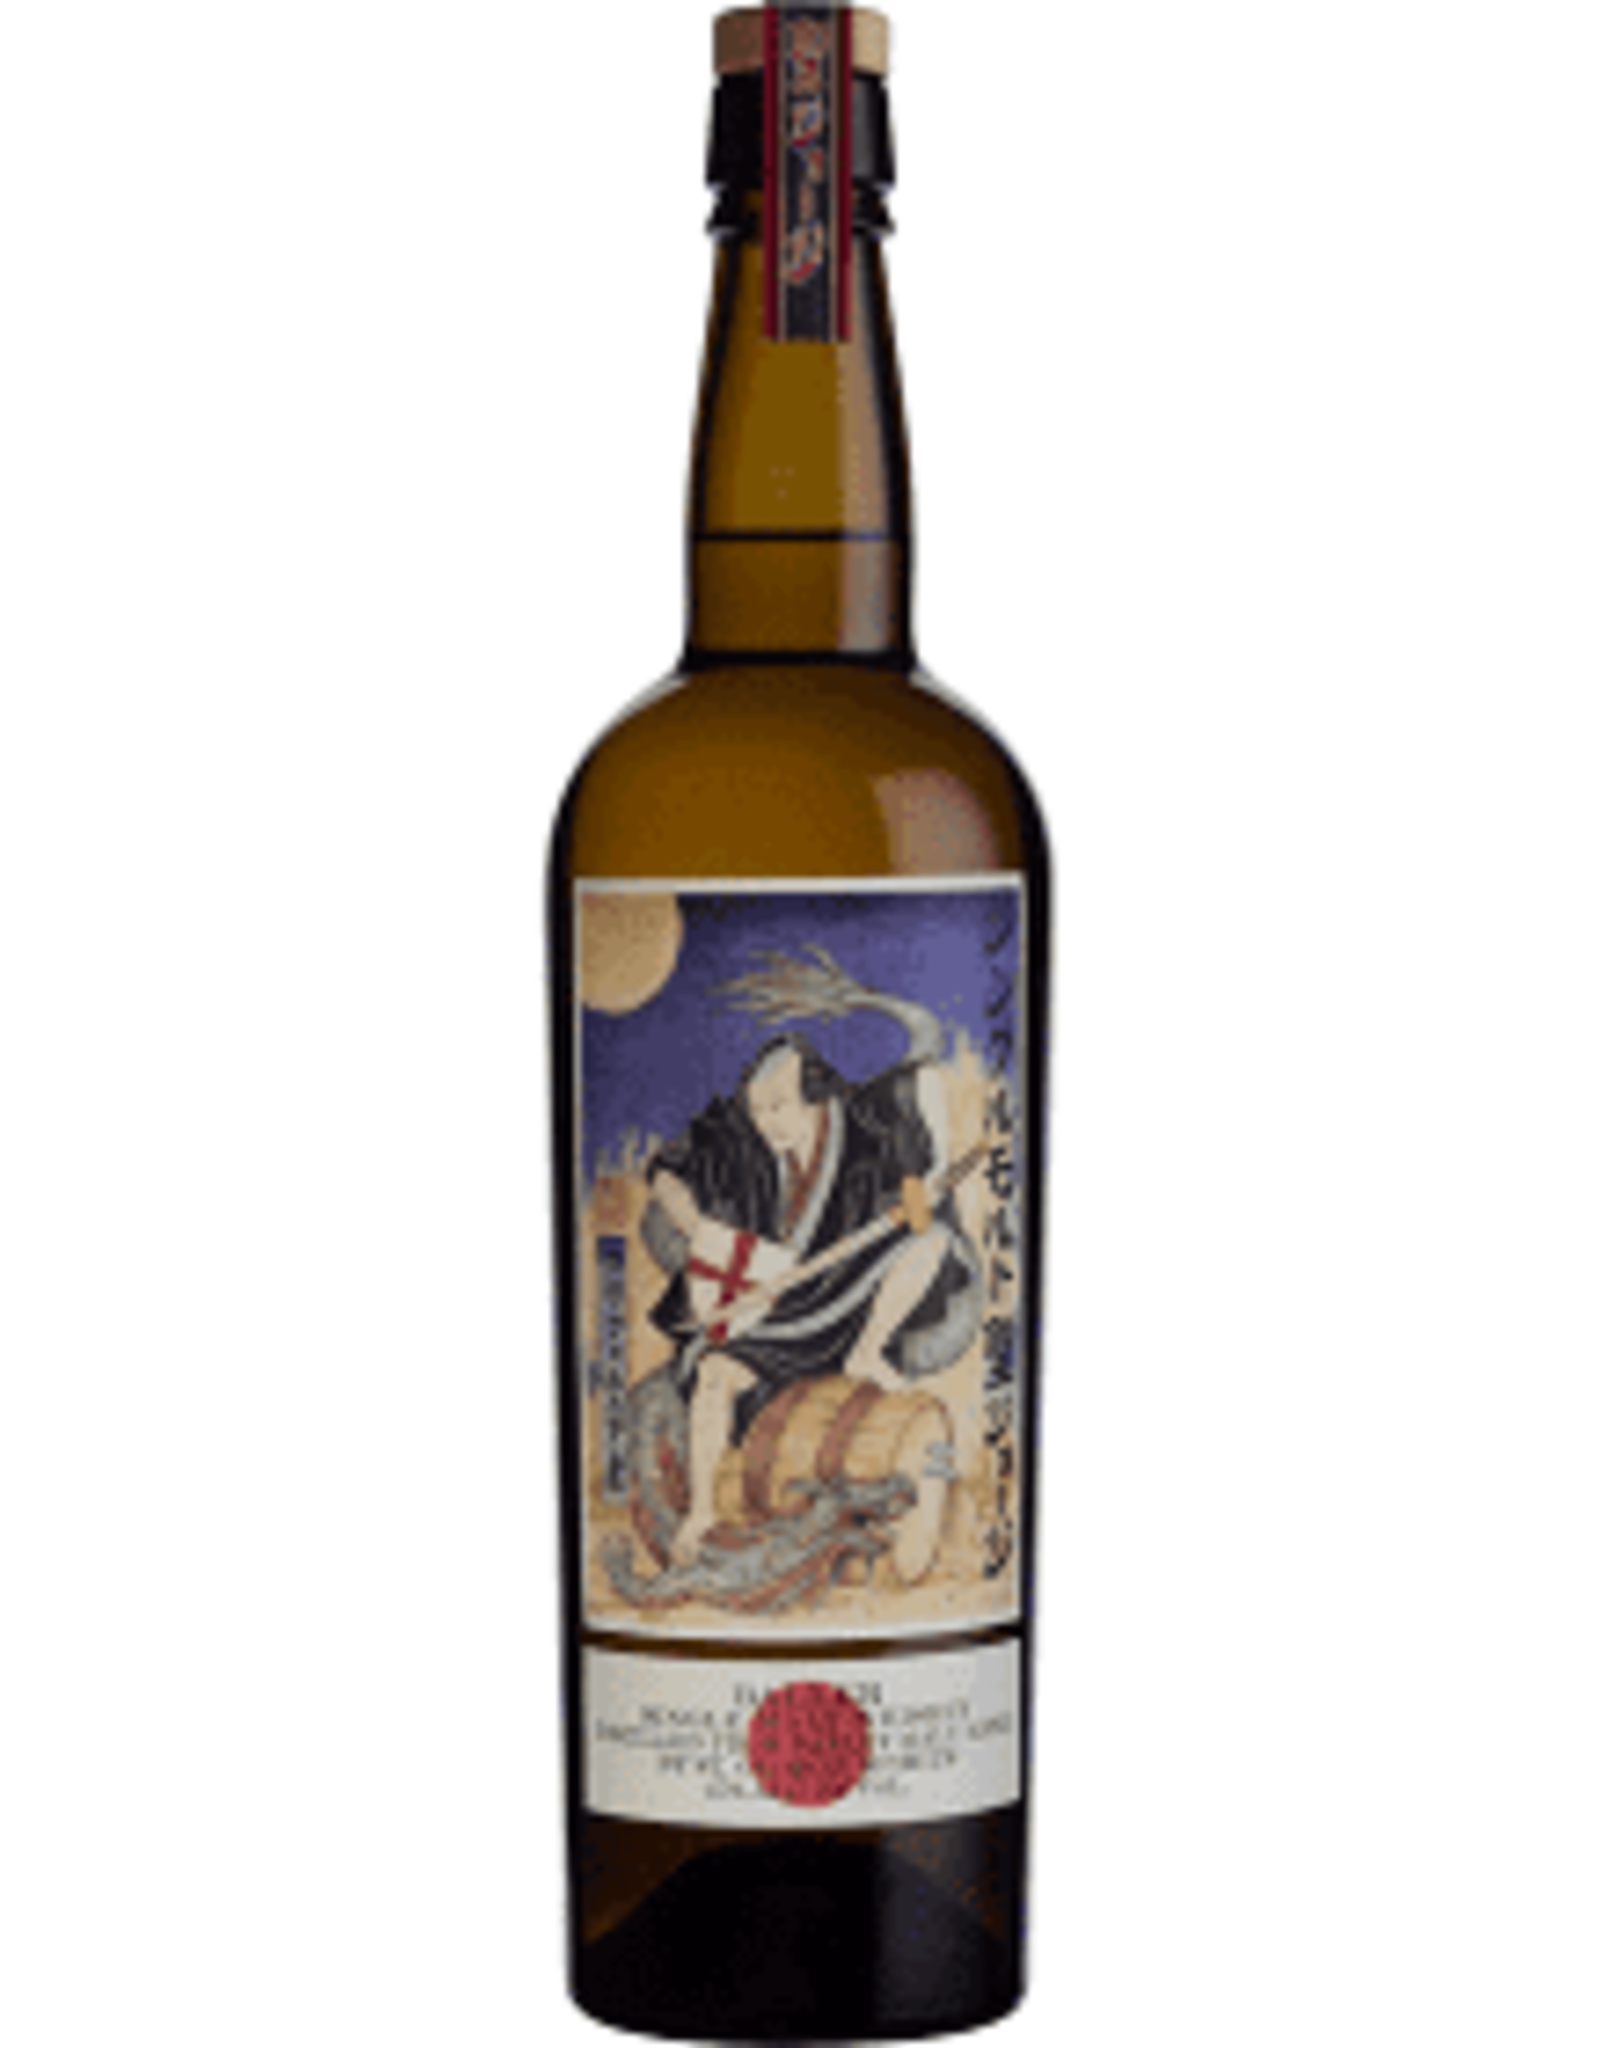 St. George 'Baller' Single Malt Whiskey